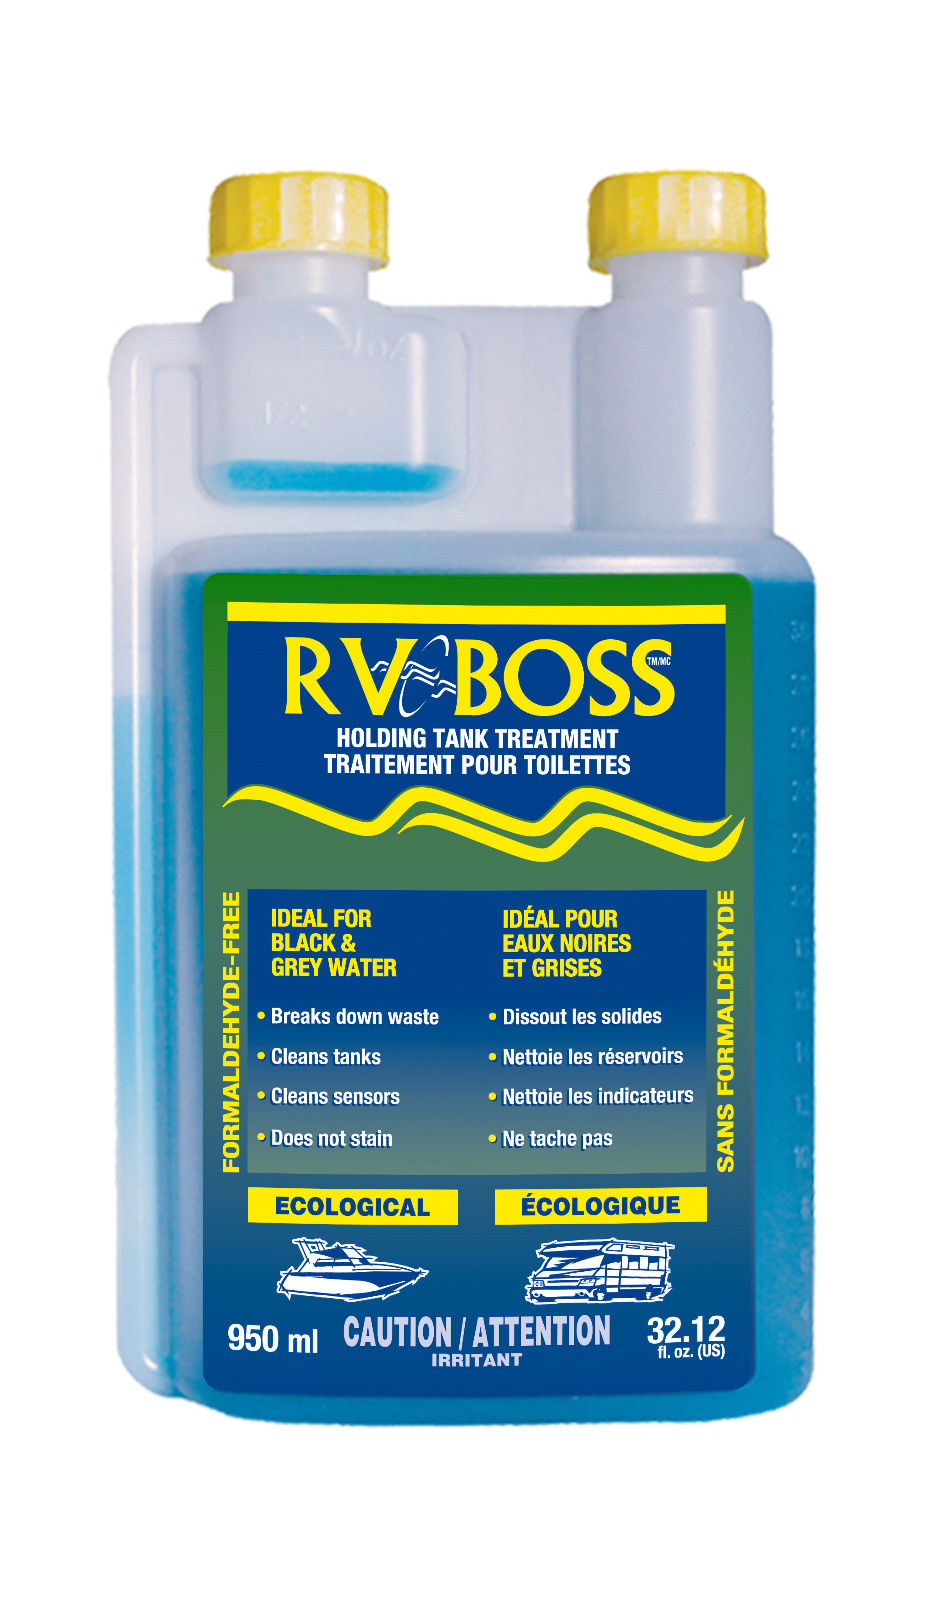 RV Boss 1777 - Box of 12, RV Boss Regular Formula (950 ml)